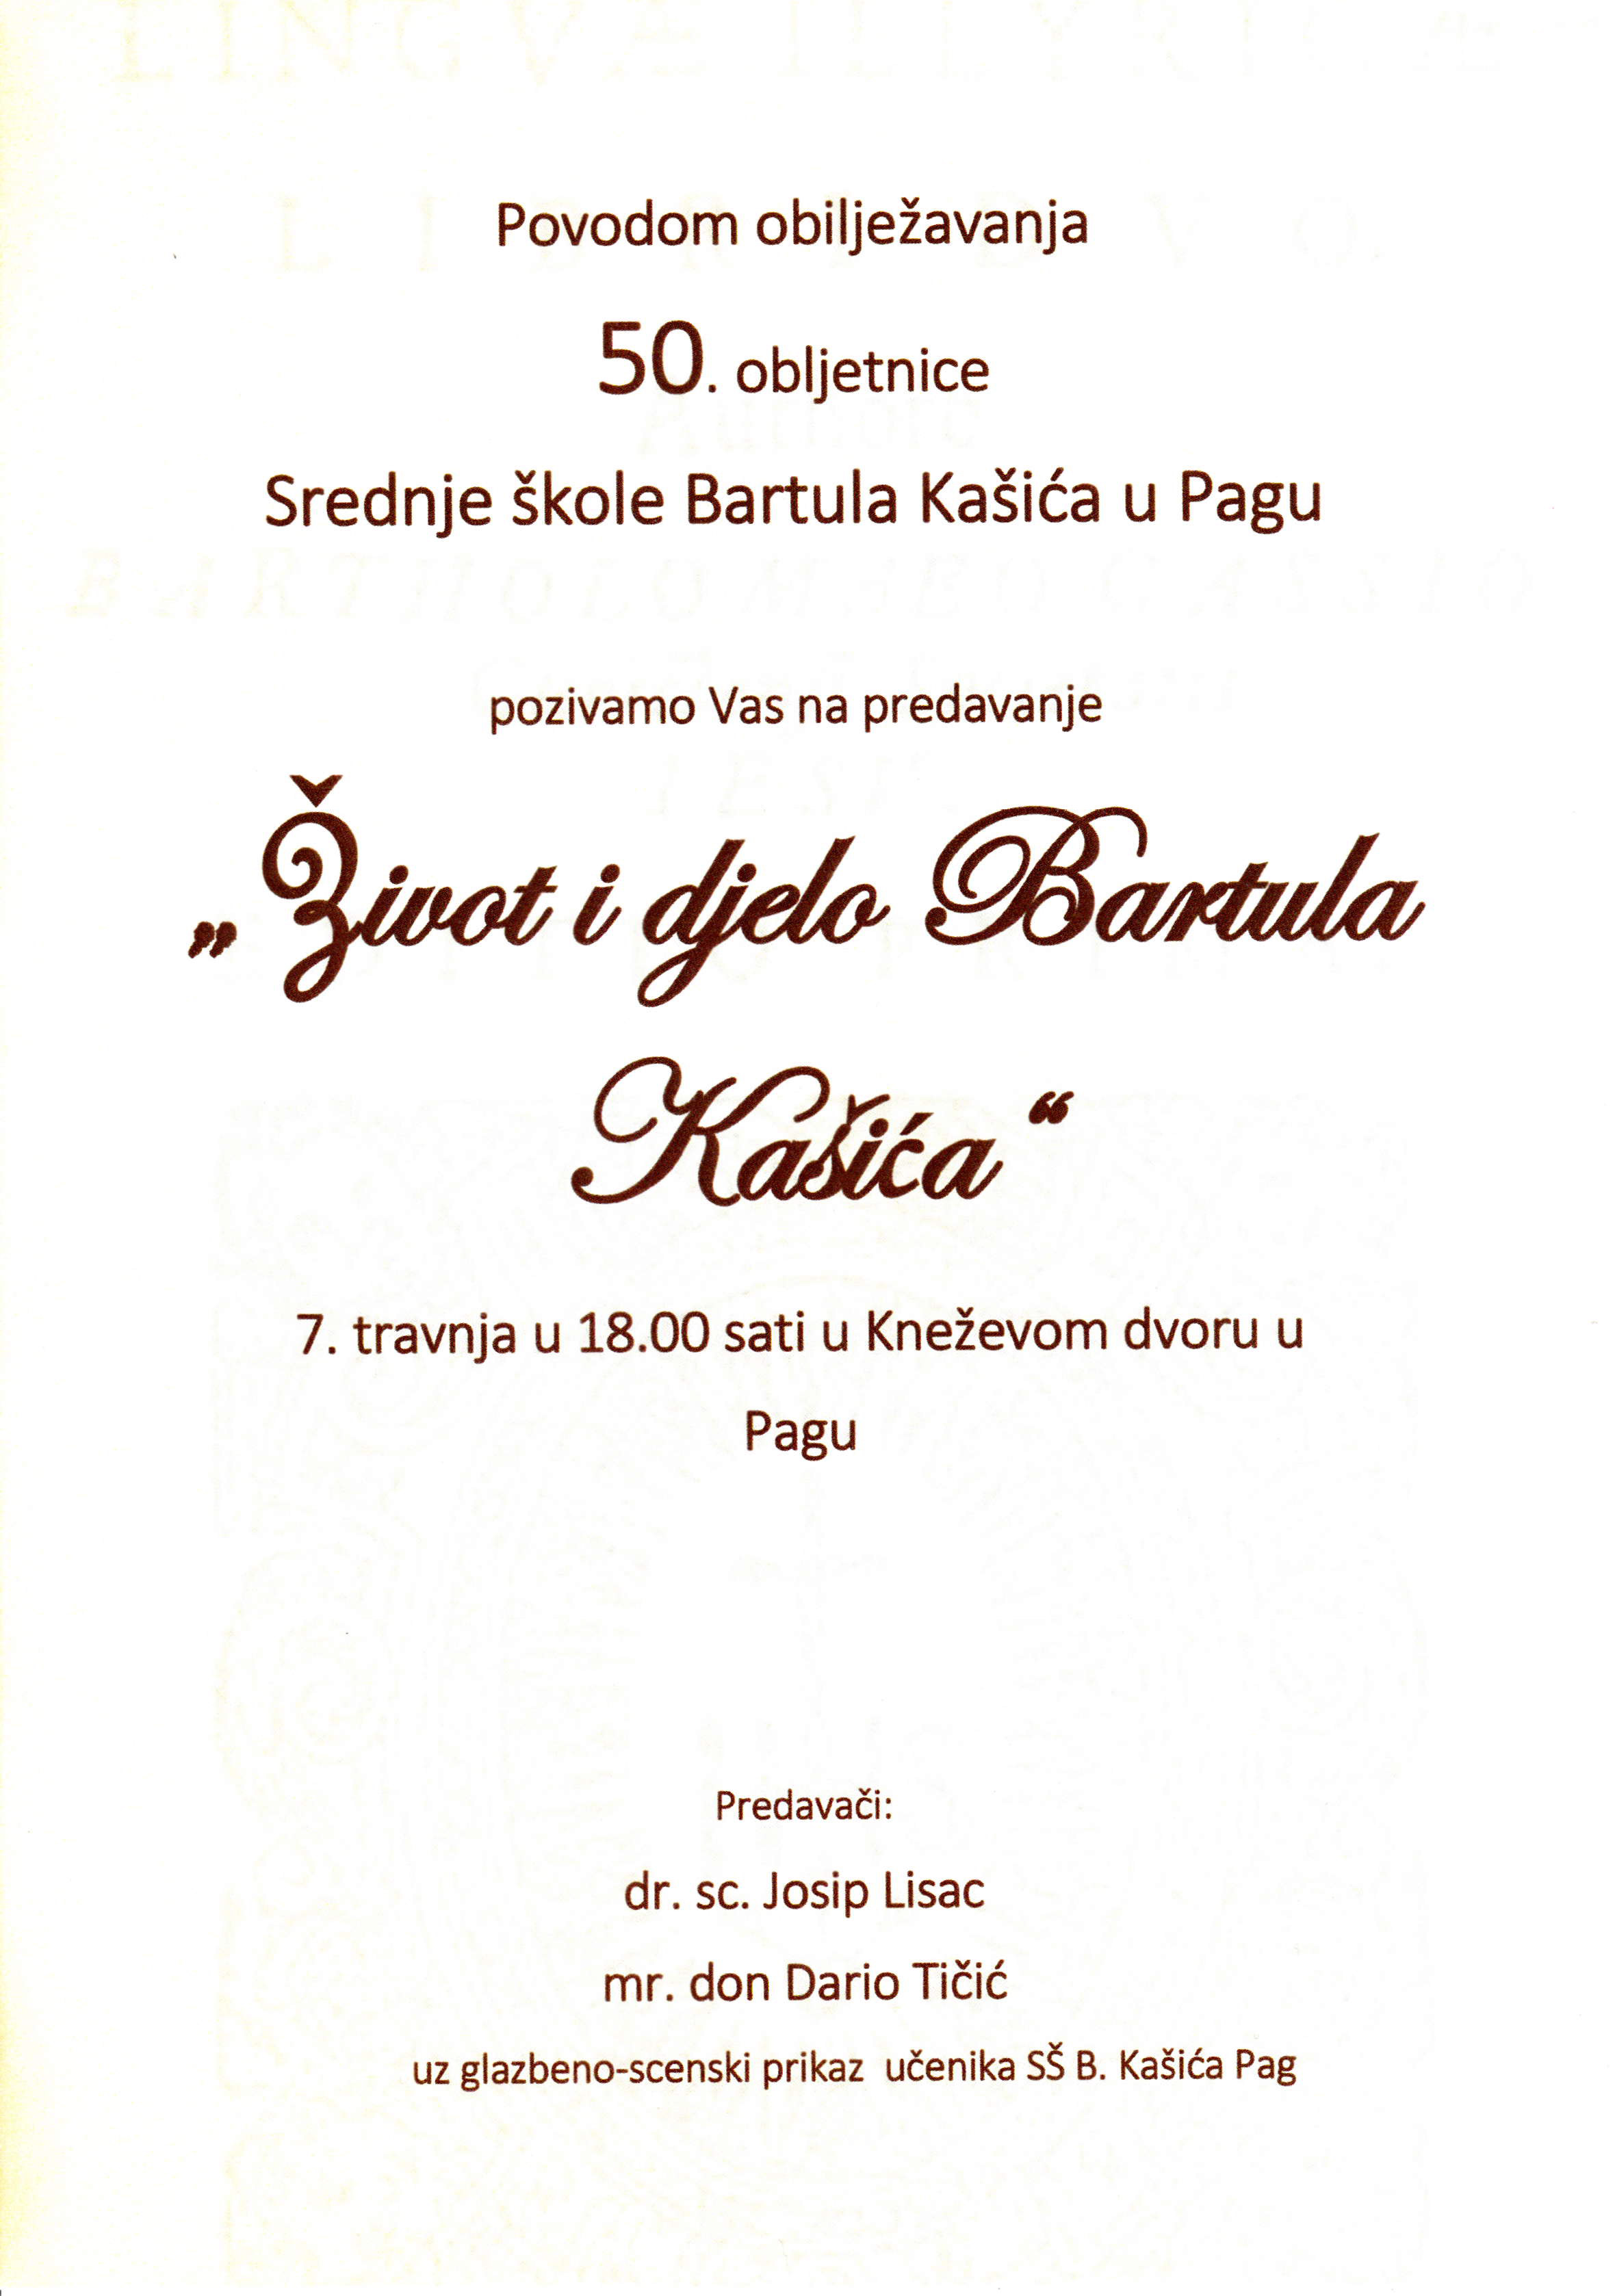 Predavanje o životu i djelu Bartula Kašića